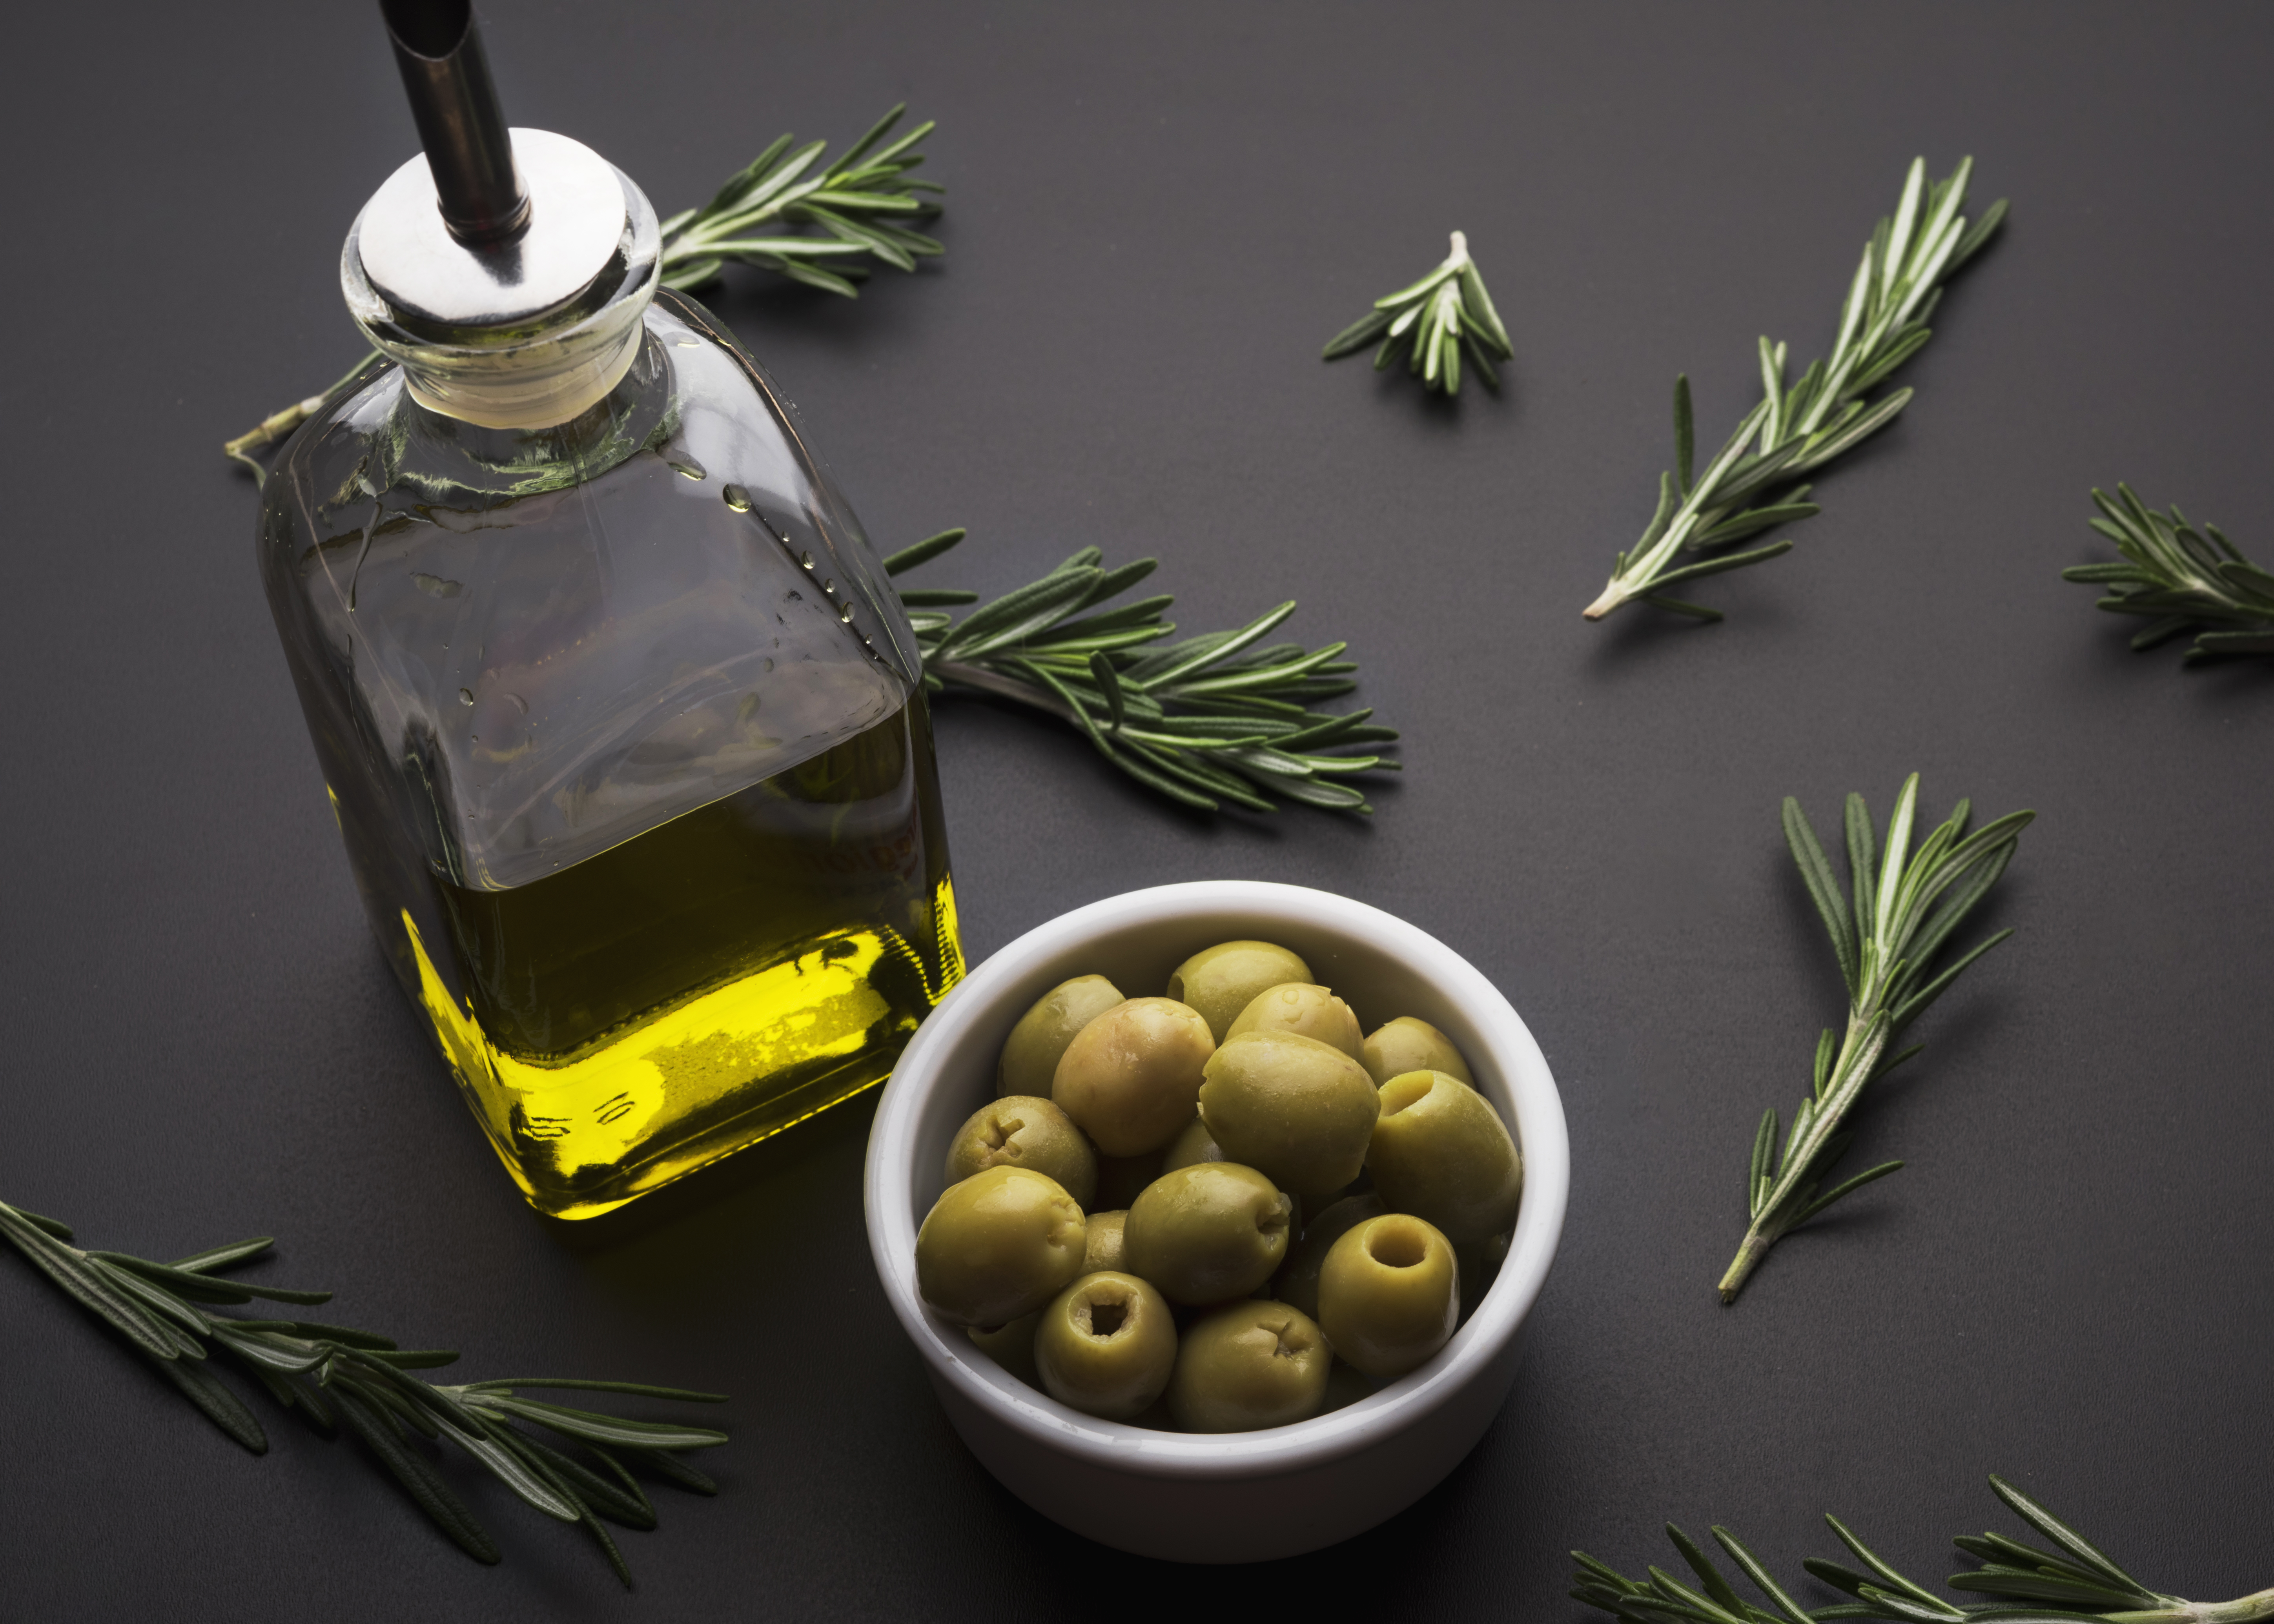 Оливковое масло застывает